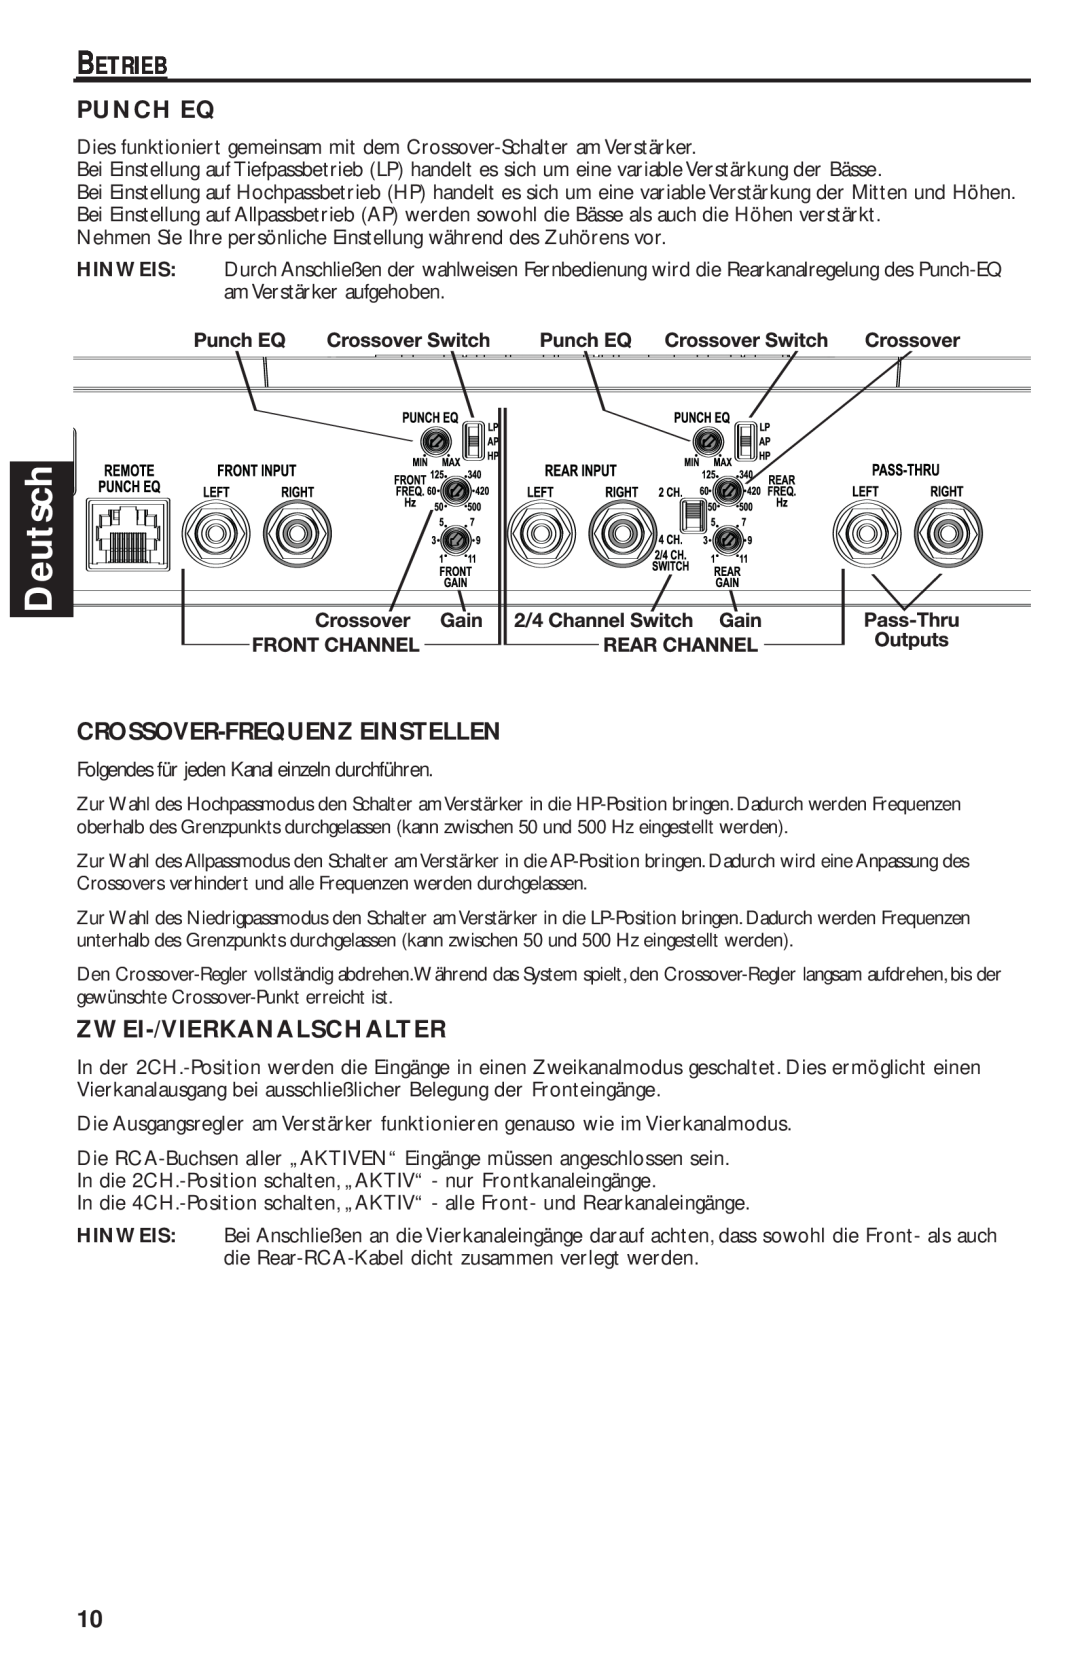 Rockford Fosgate T1000-4 manual Deutsch, Betrieb, Punch Eq, Crossover-Frequenzeinstellen, Zwei-/Vierkanalschalter 